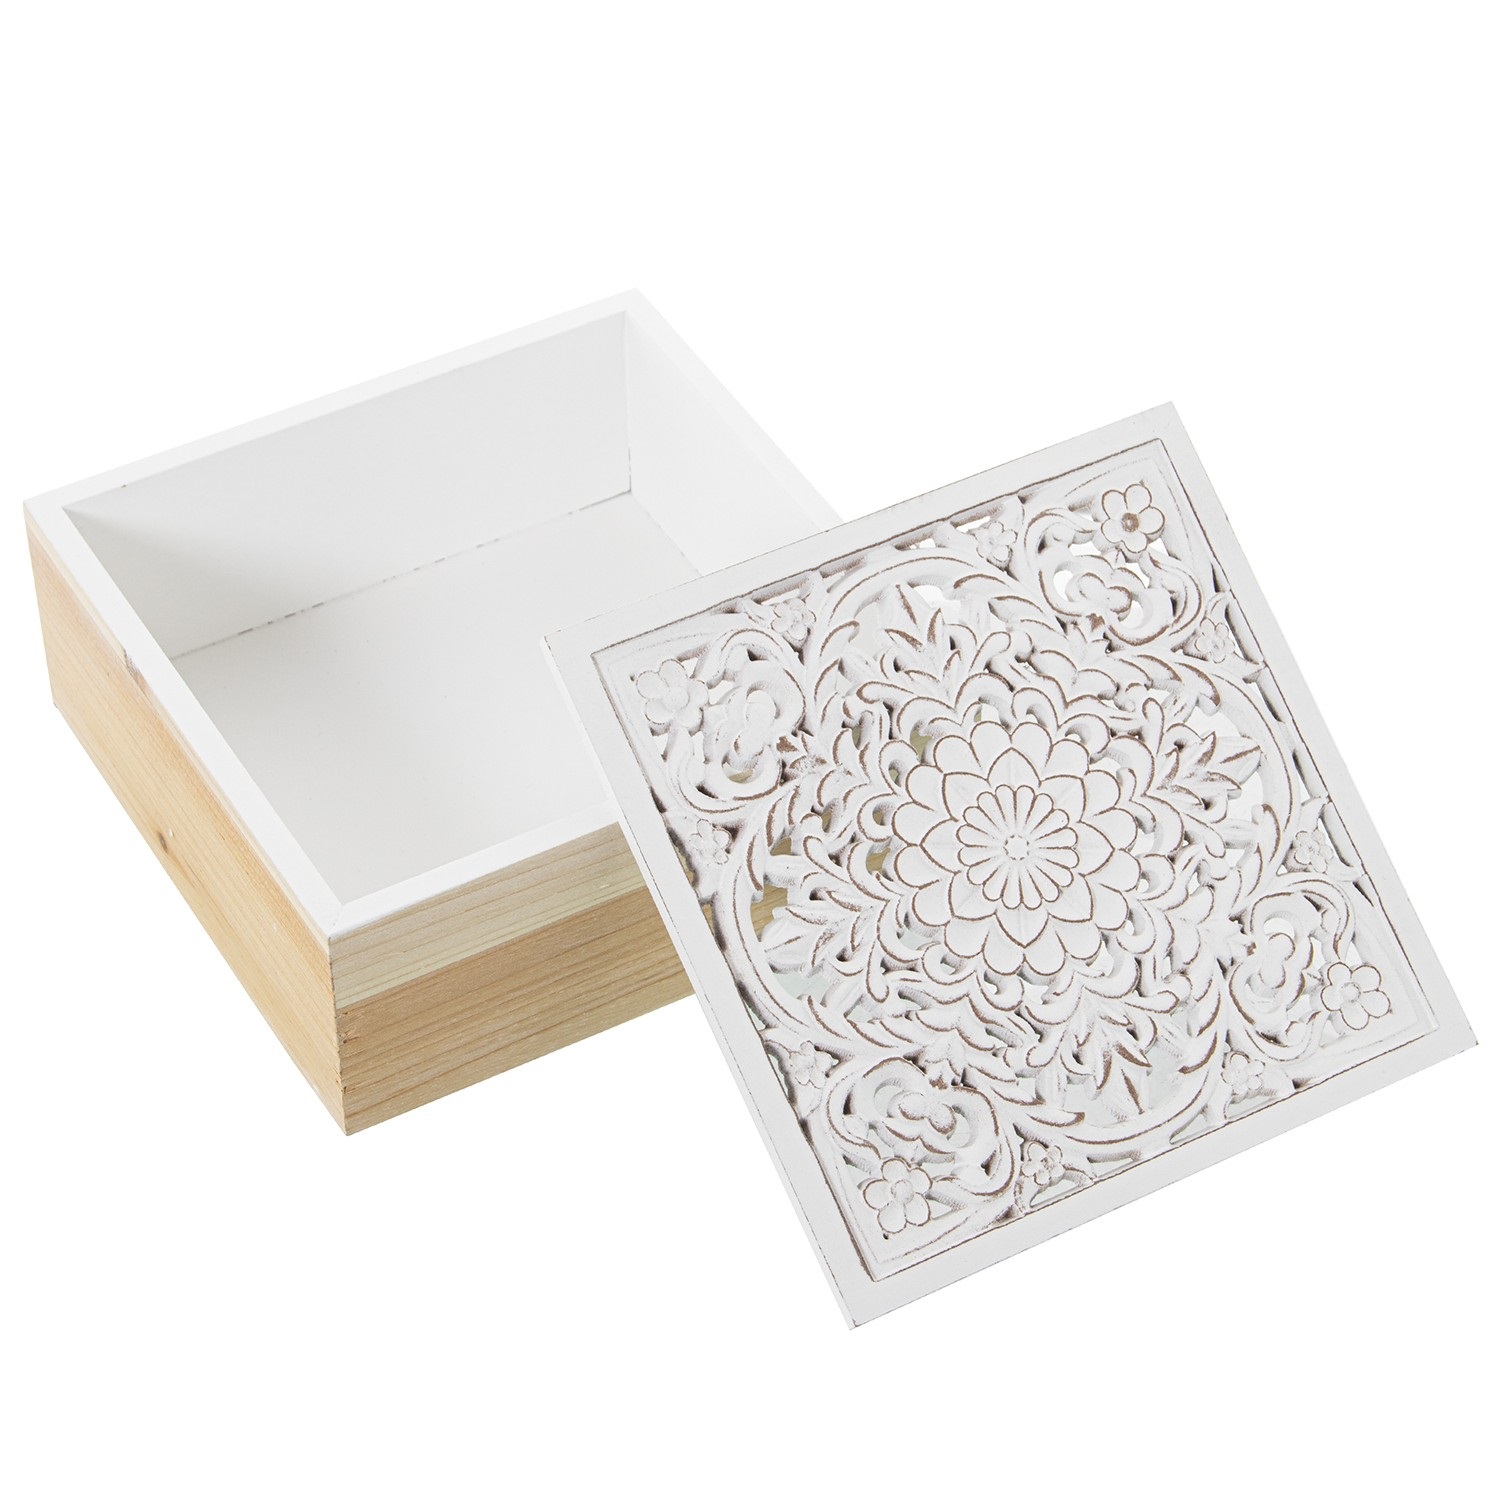 35312-set-2-cajas-madera-natural-blanco-1.jpg